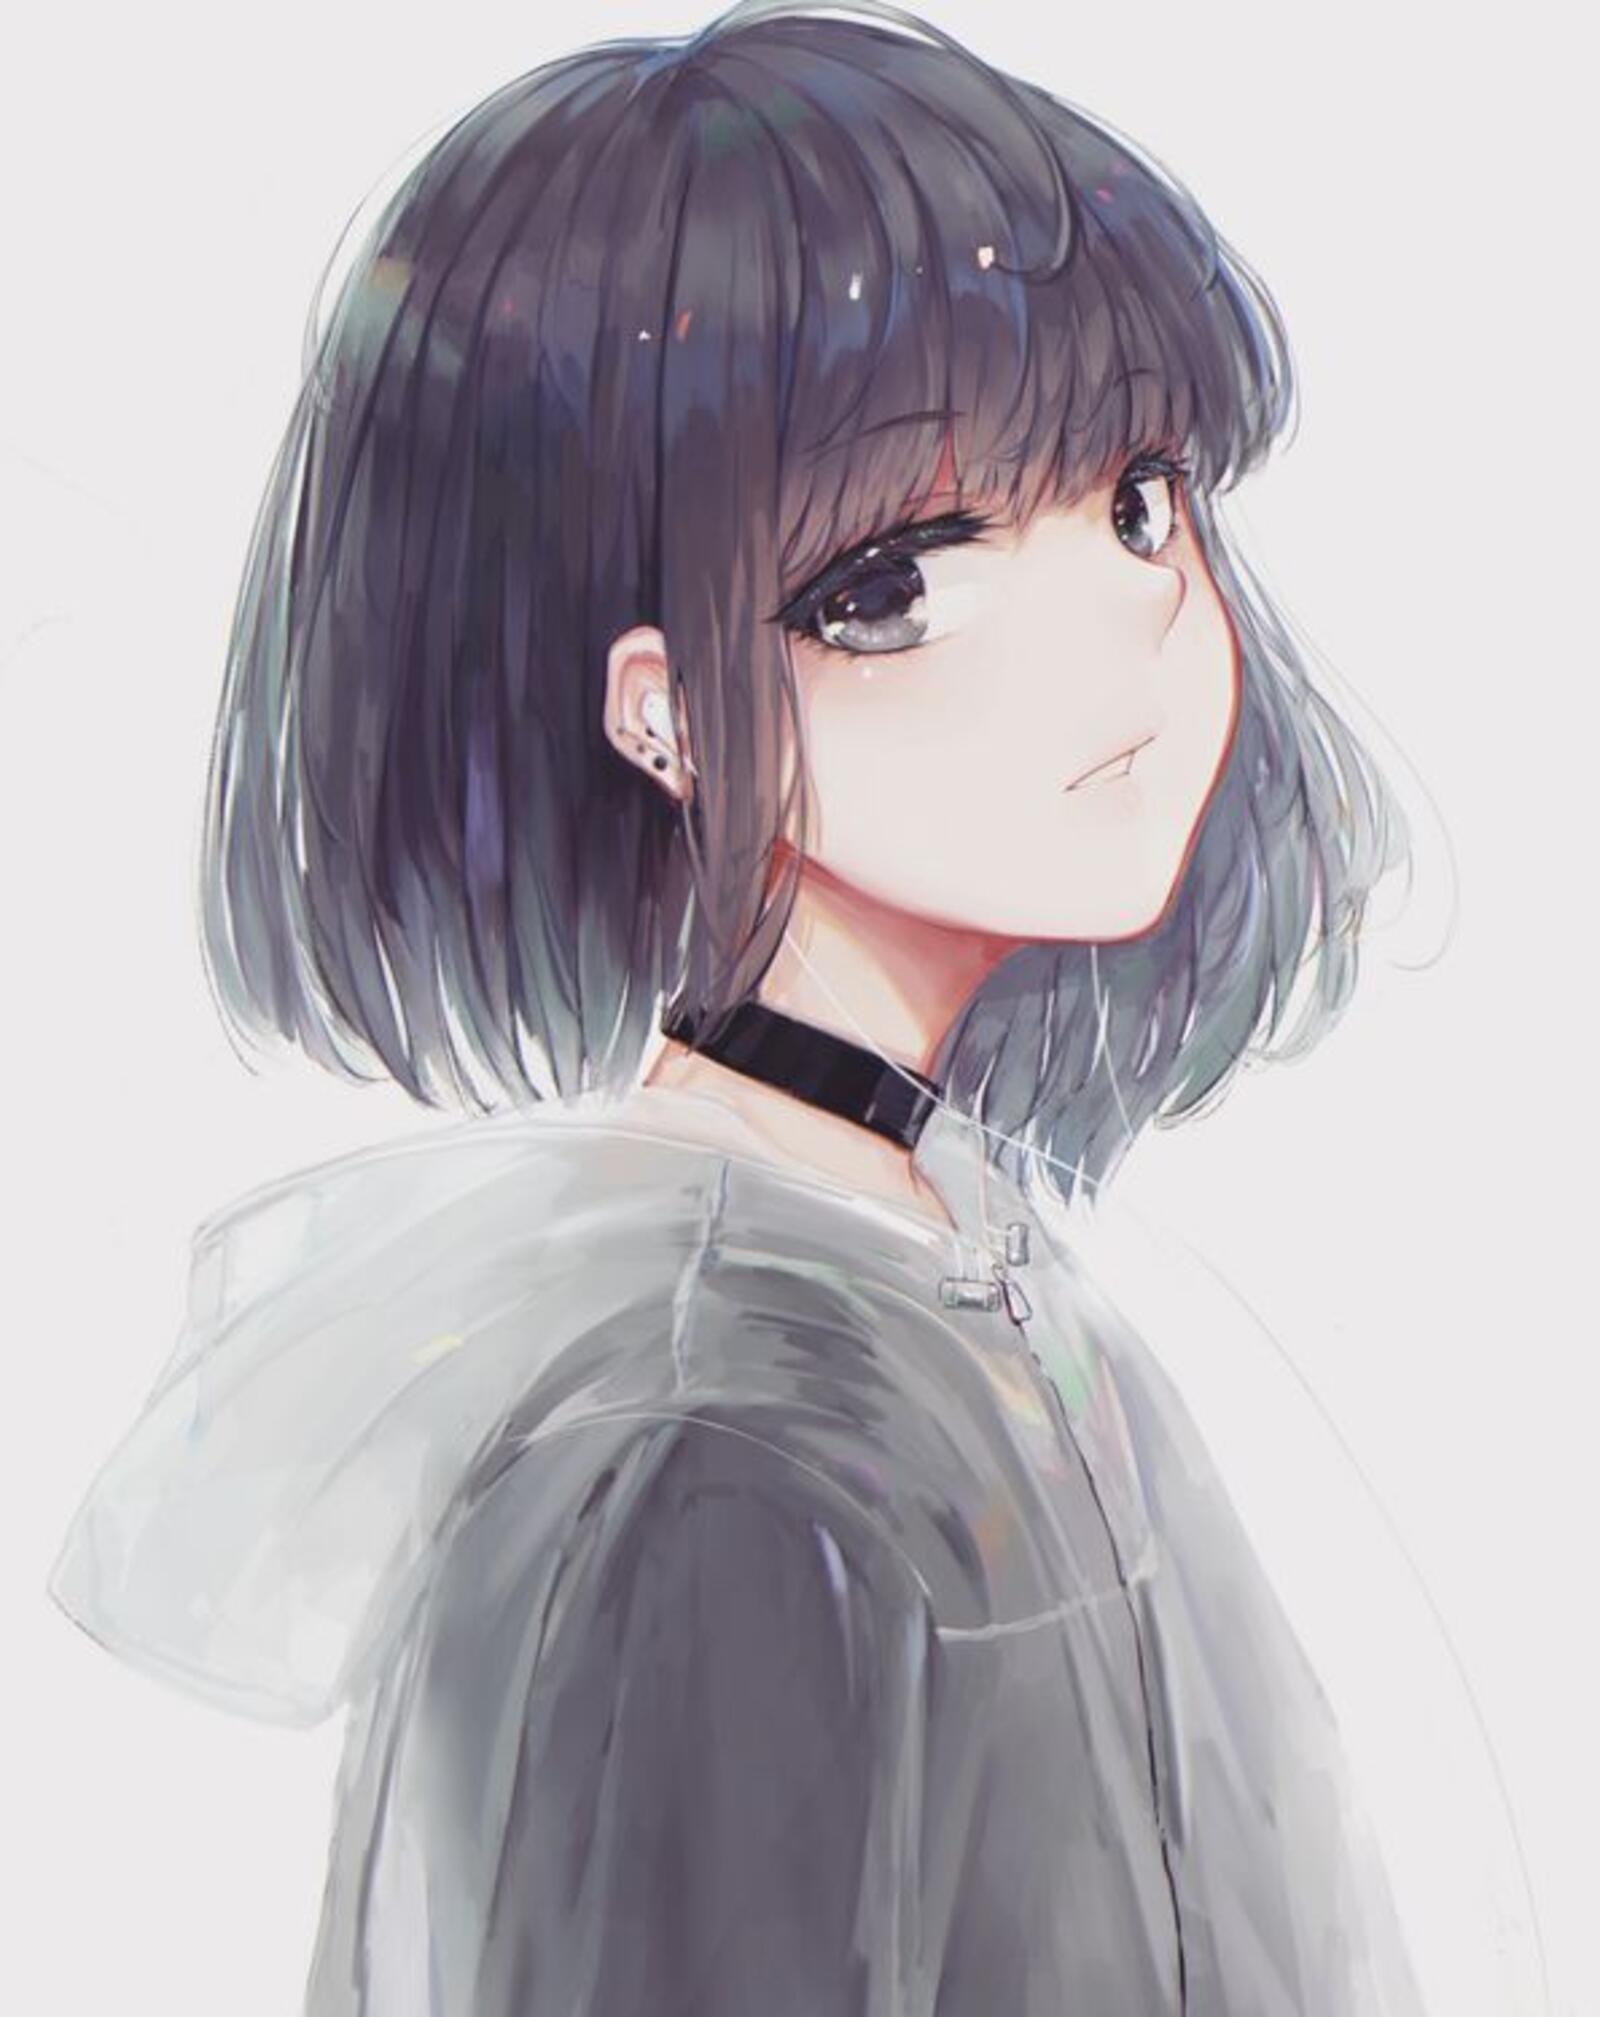 Wallpapers anime girl profile type short hair on the desktop